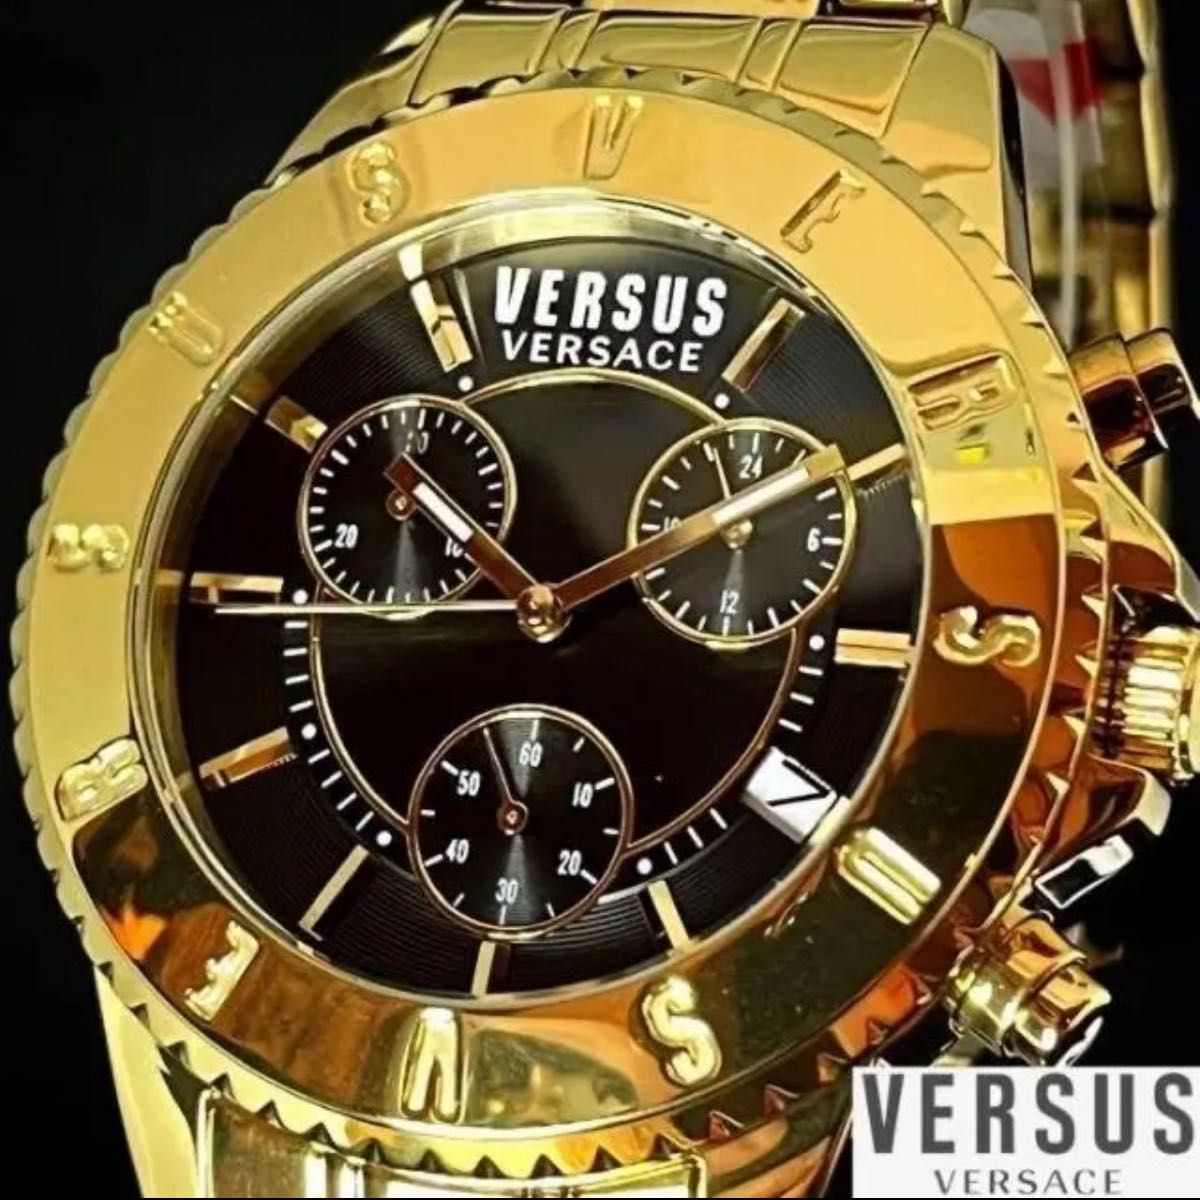 【ゴールド色！】Versus Versace/ベルサス ベルサーチ/メンズ腕時計/プレゼントに/男性用/ ヴェルサス ヴェルサーチ